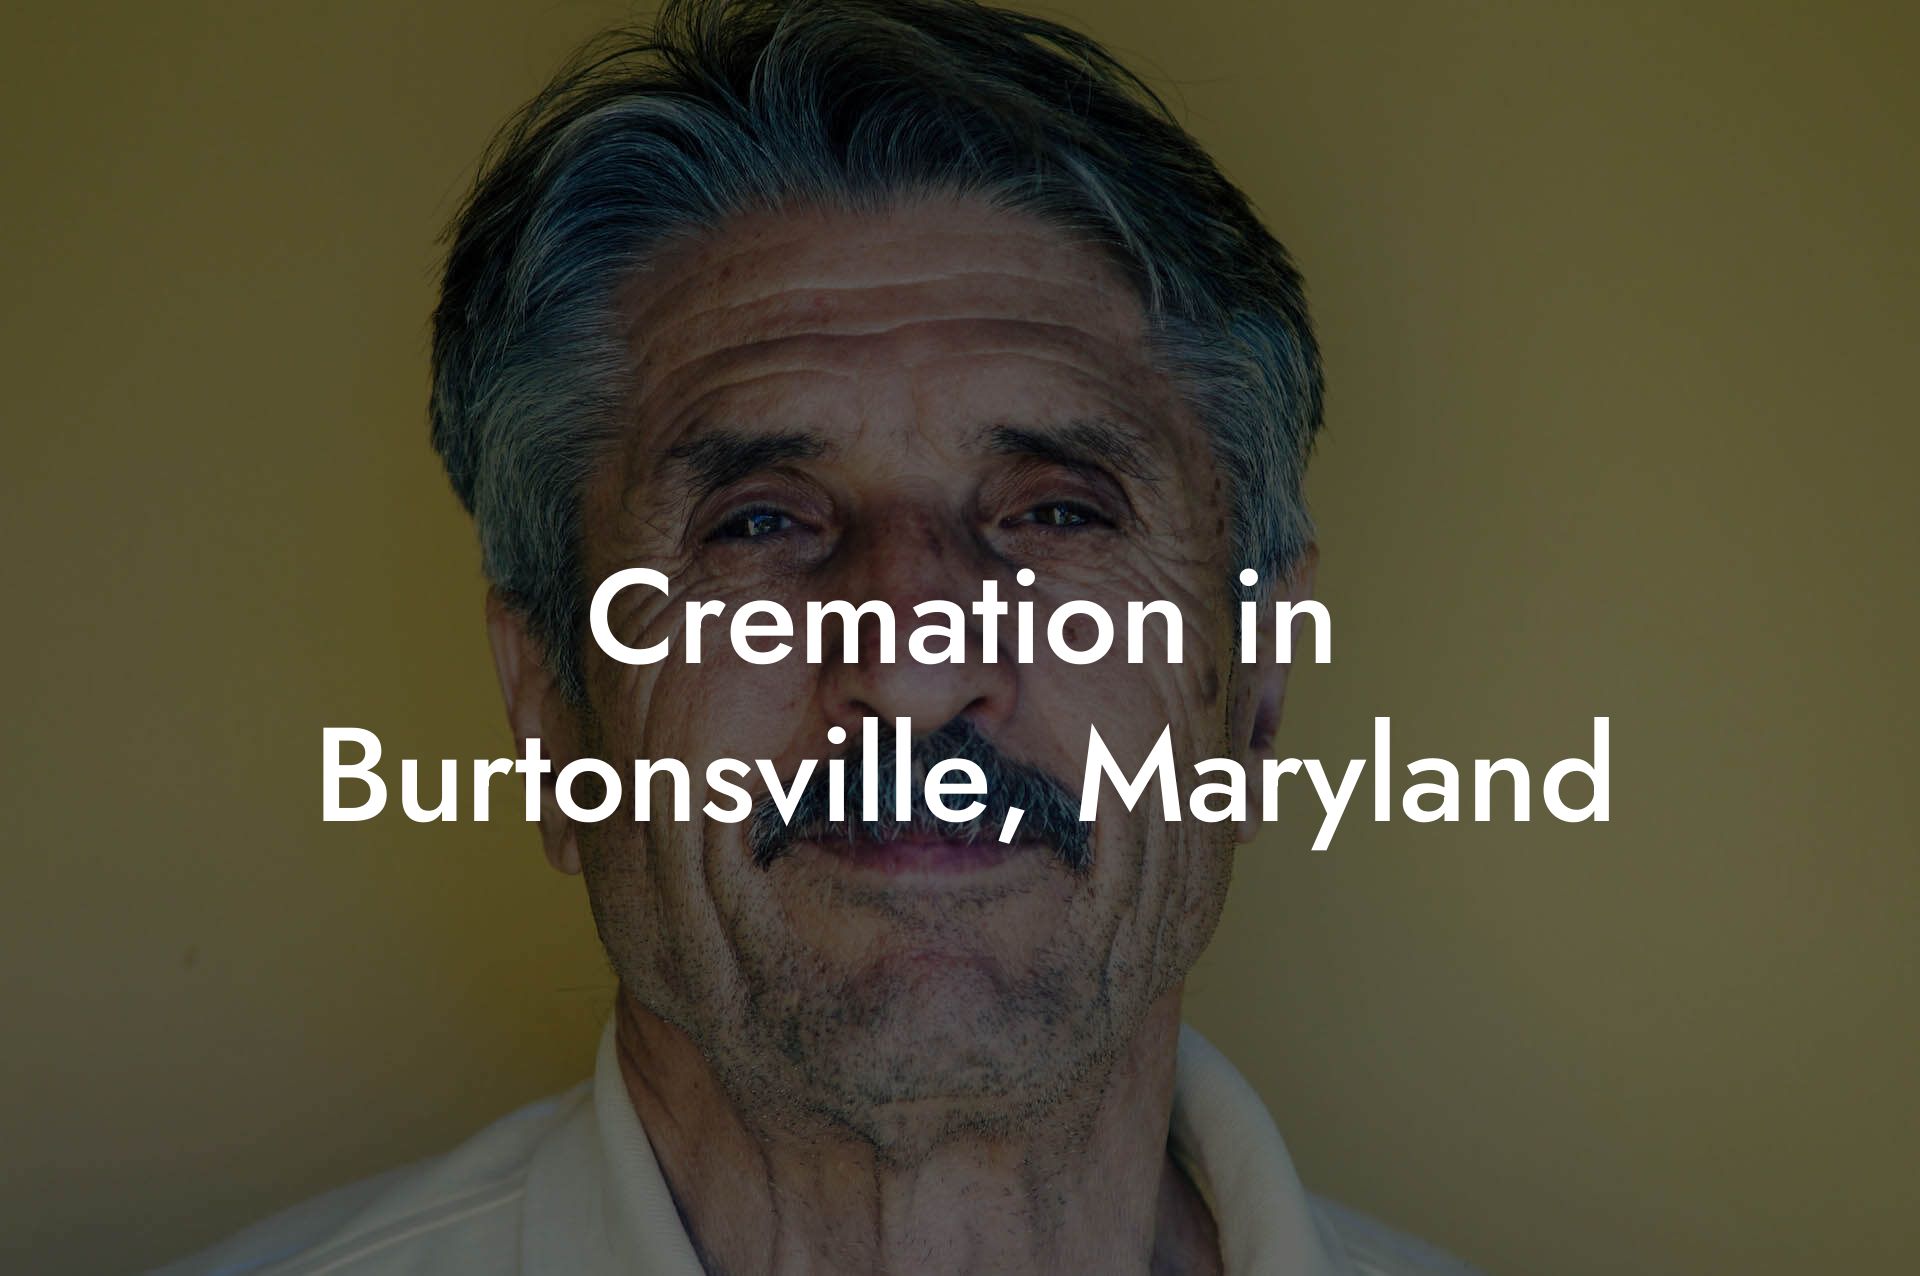 Cremation in Burtonsville, Maryland